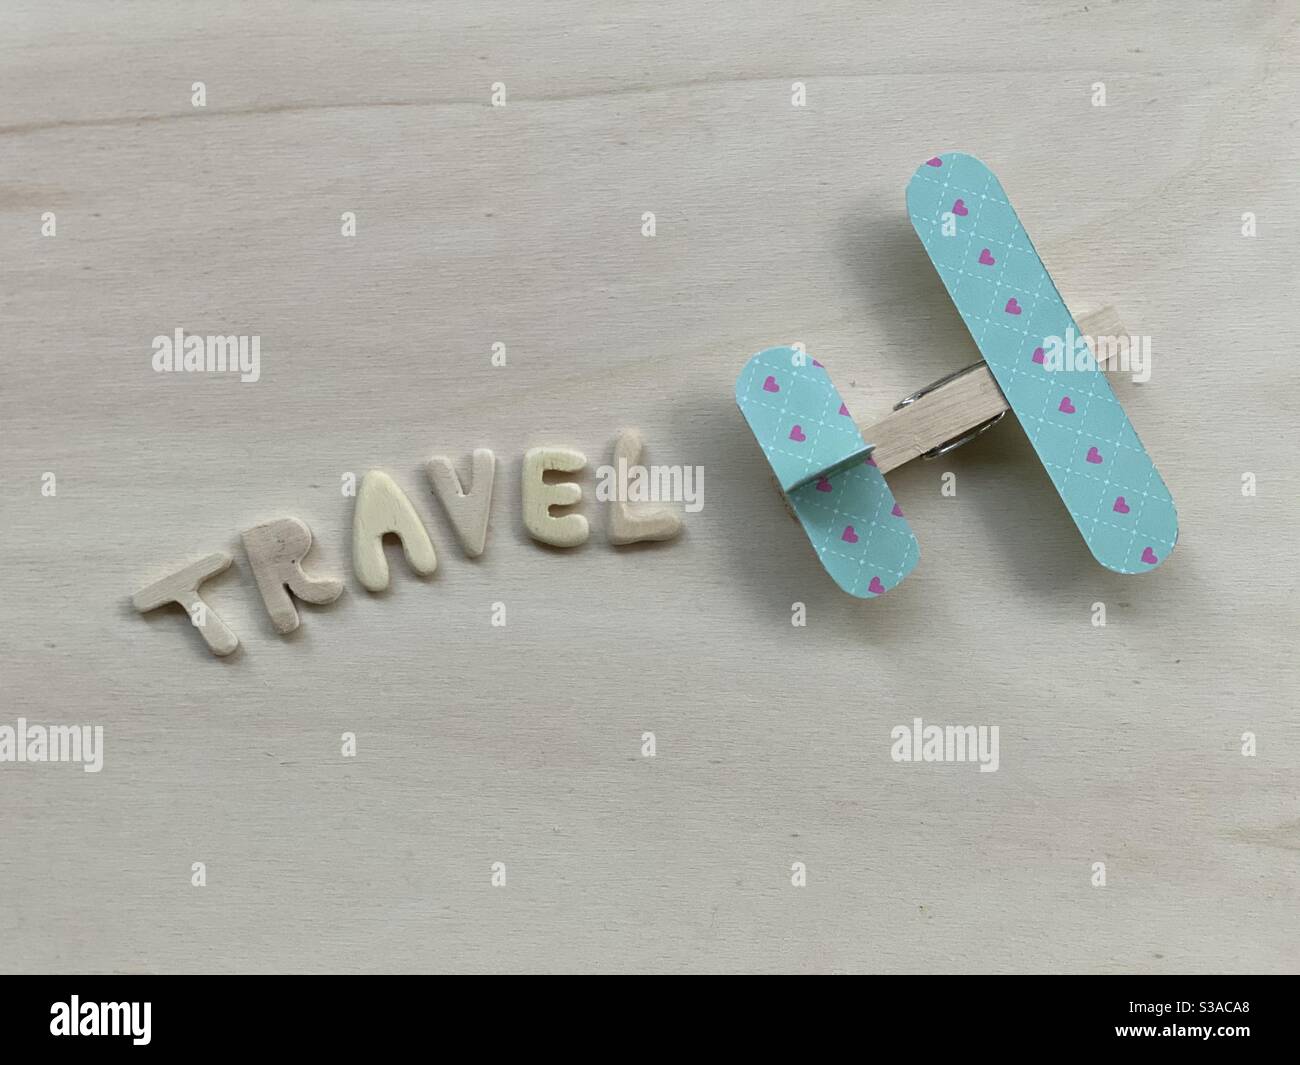 Voyage, composition conceptuelle avec des lettres faites à la main en bois et un avion à épingles Banque D'Images